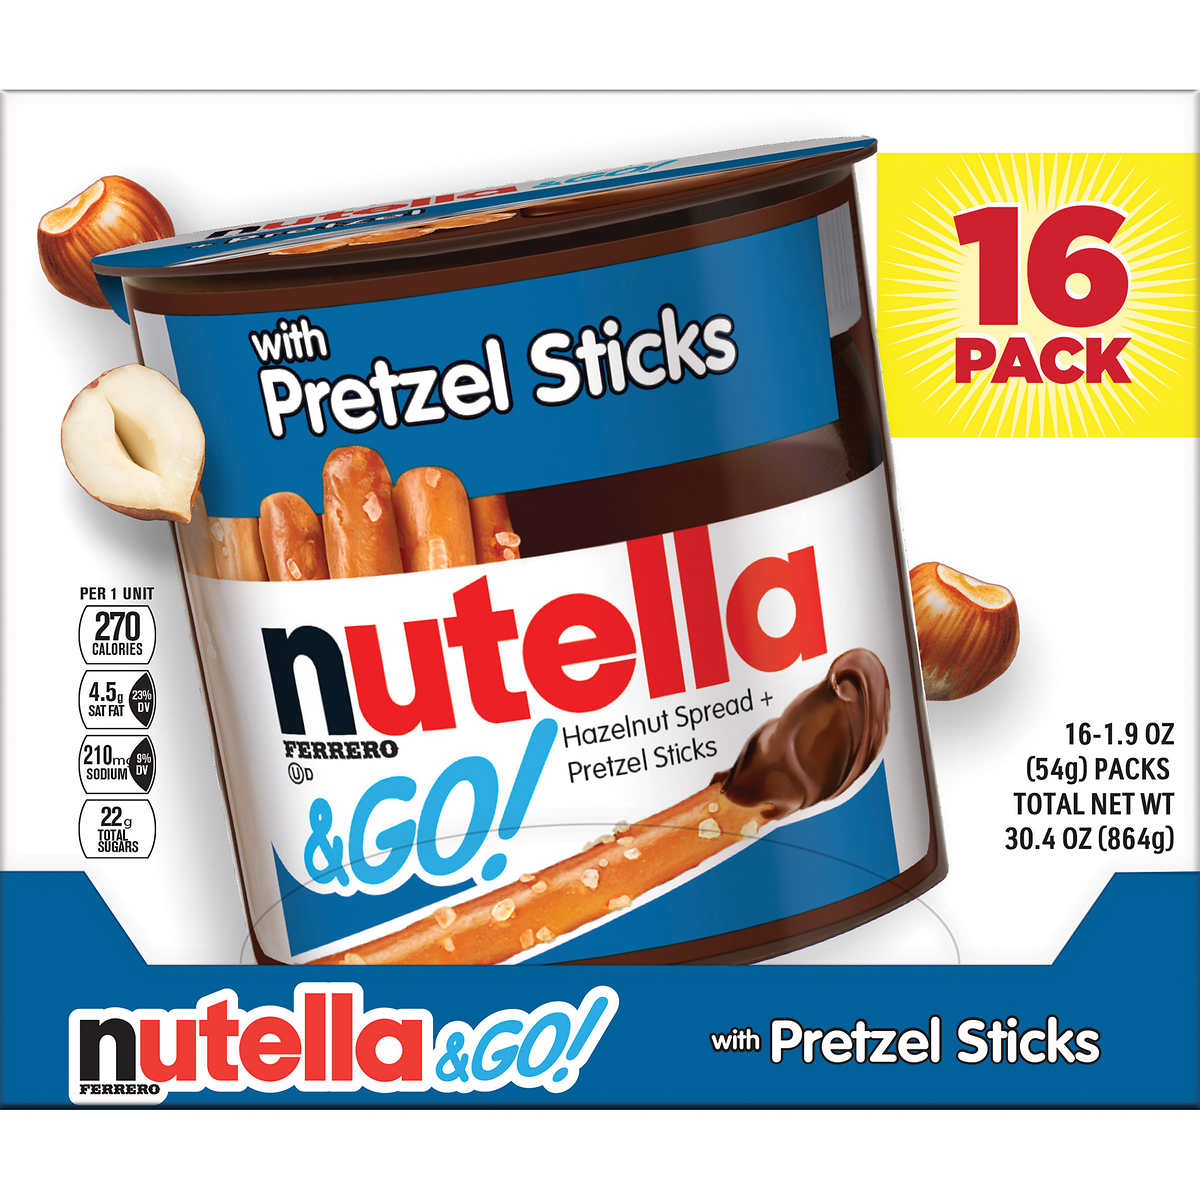 Nutella and Go Hazelnut Spread with Pretzel Sticks, 1.9 oz, 16